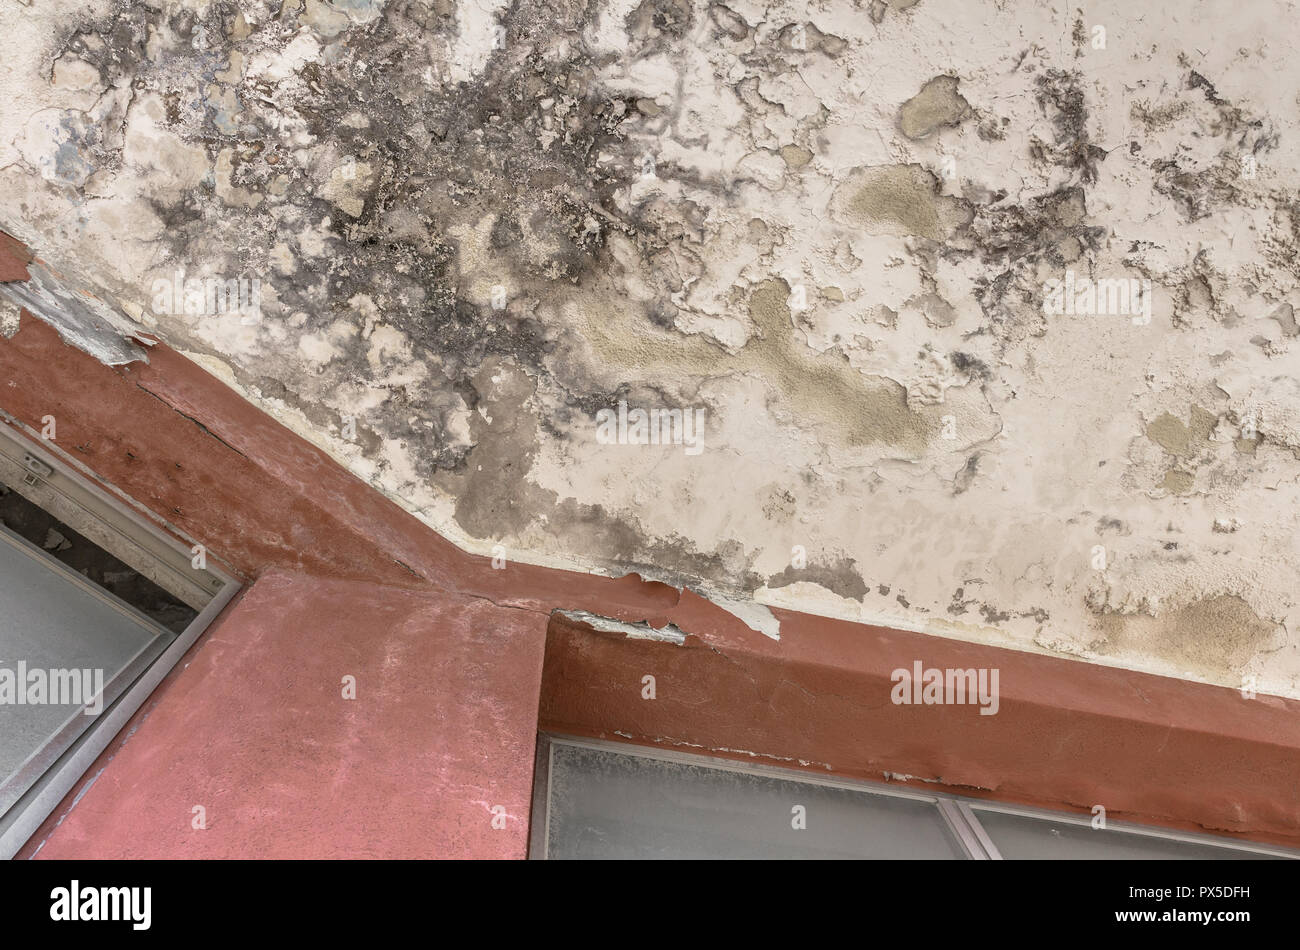 La croissance des moisissures et des taches noires sur le plafond d'un hôtel abandonné ou maison. Banque D'Images